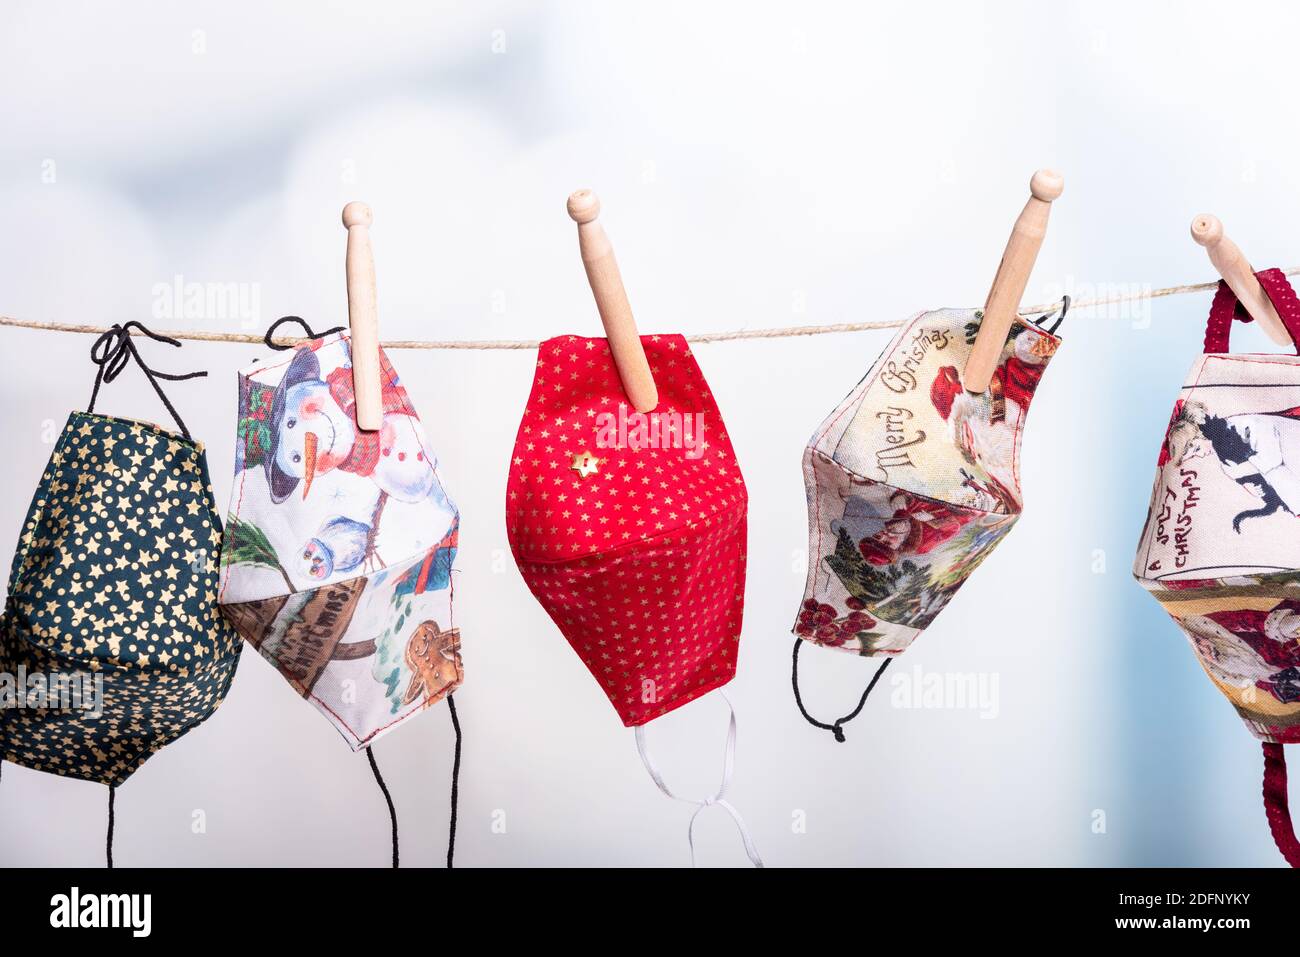 Bunte Corona Masken auf einer Wäscheleine in der Vorweihnachtszeit Stock Photo